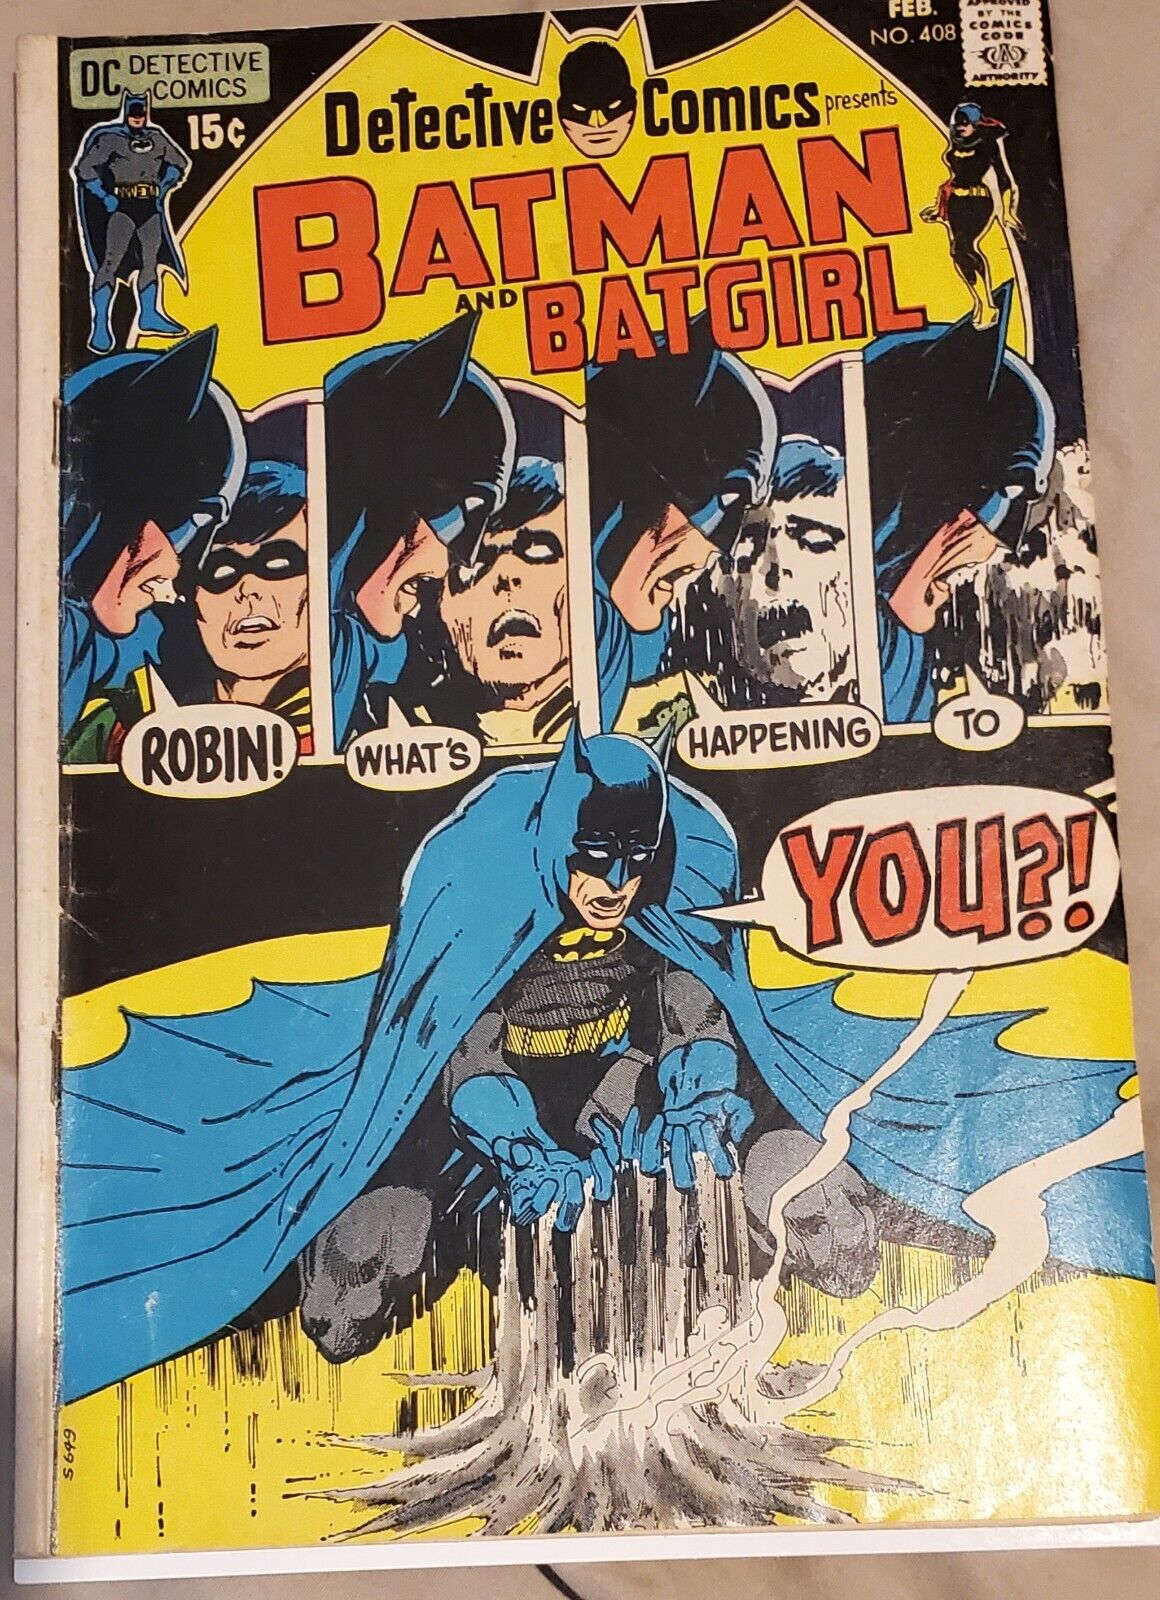 Batman and Batigrl #408 Feb 1971 Detective Comics